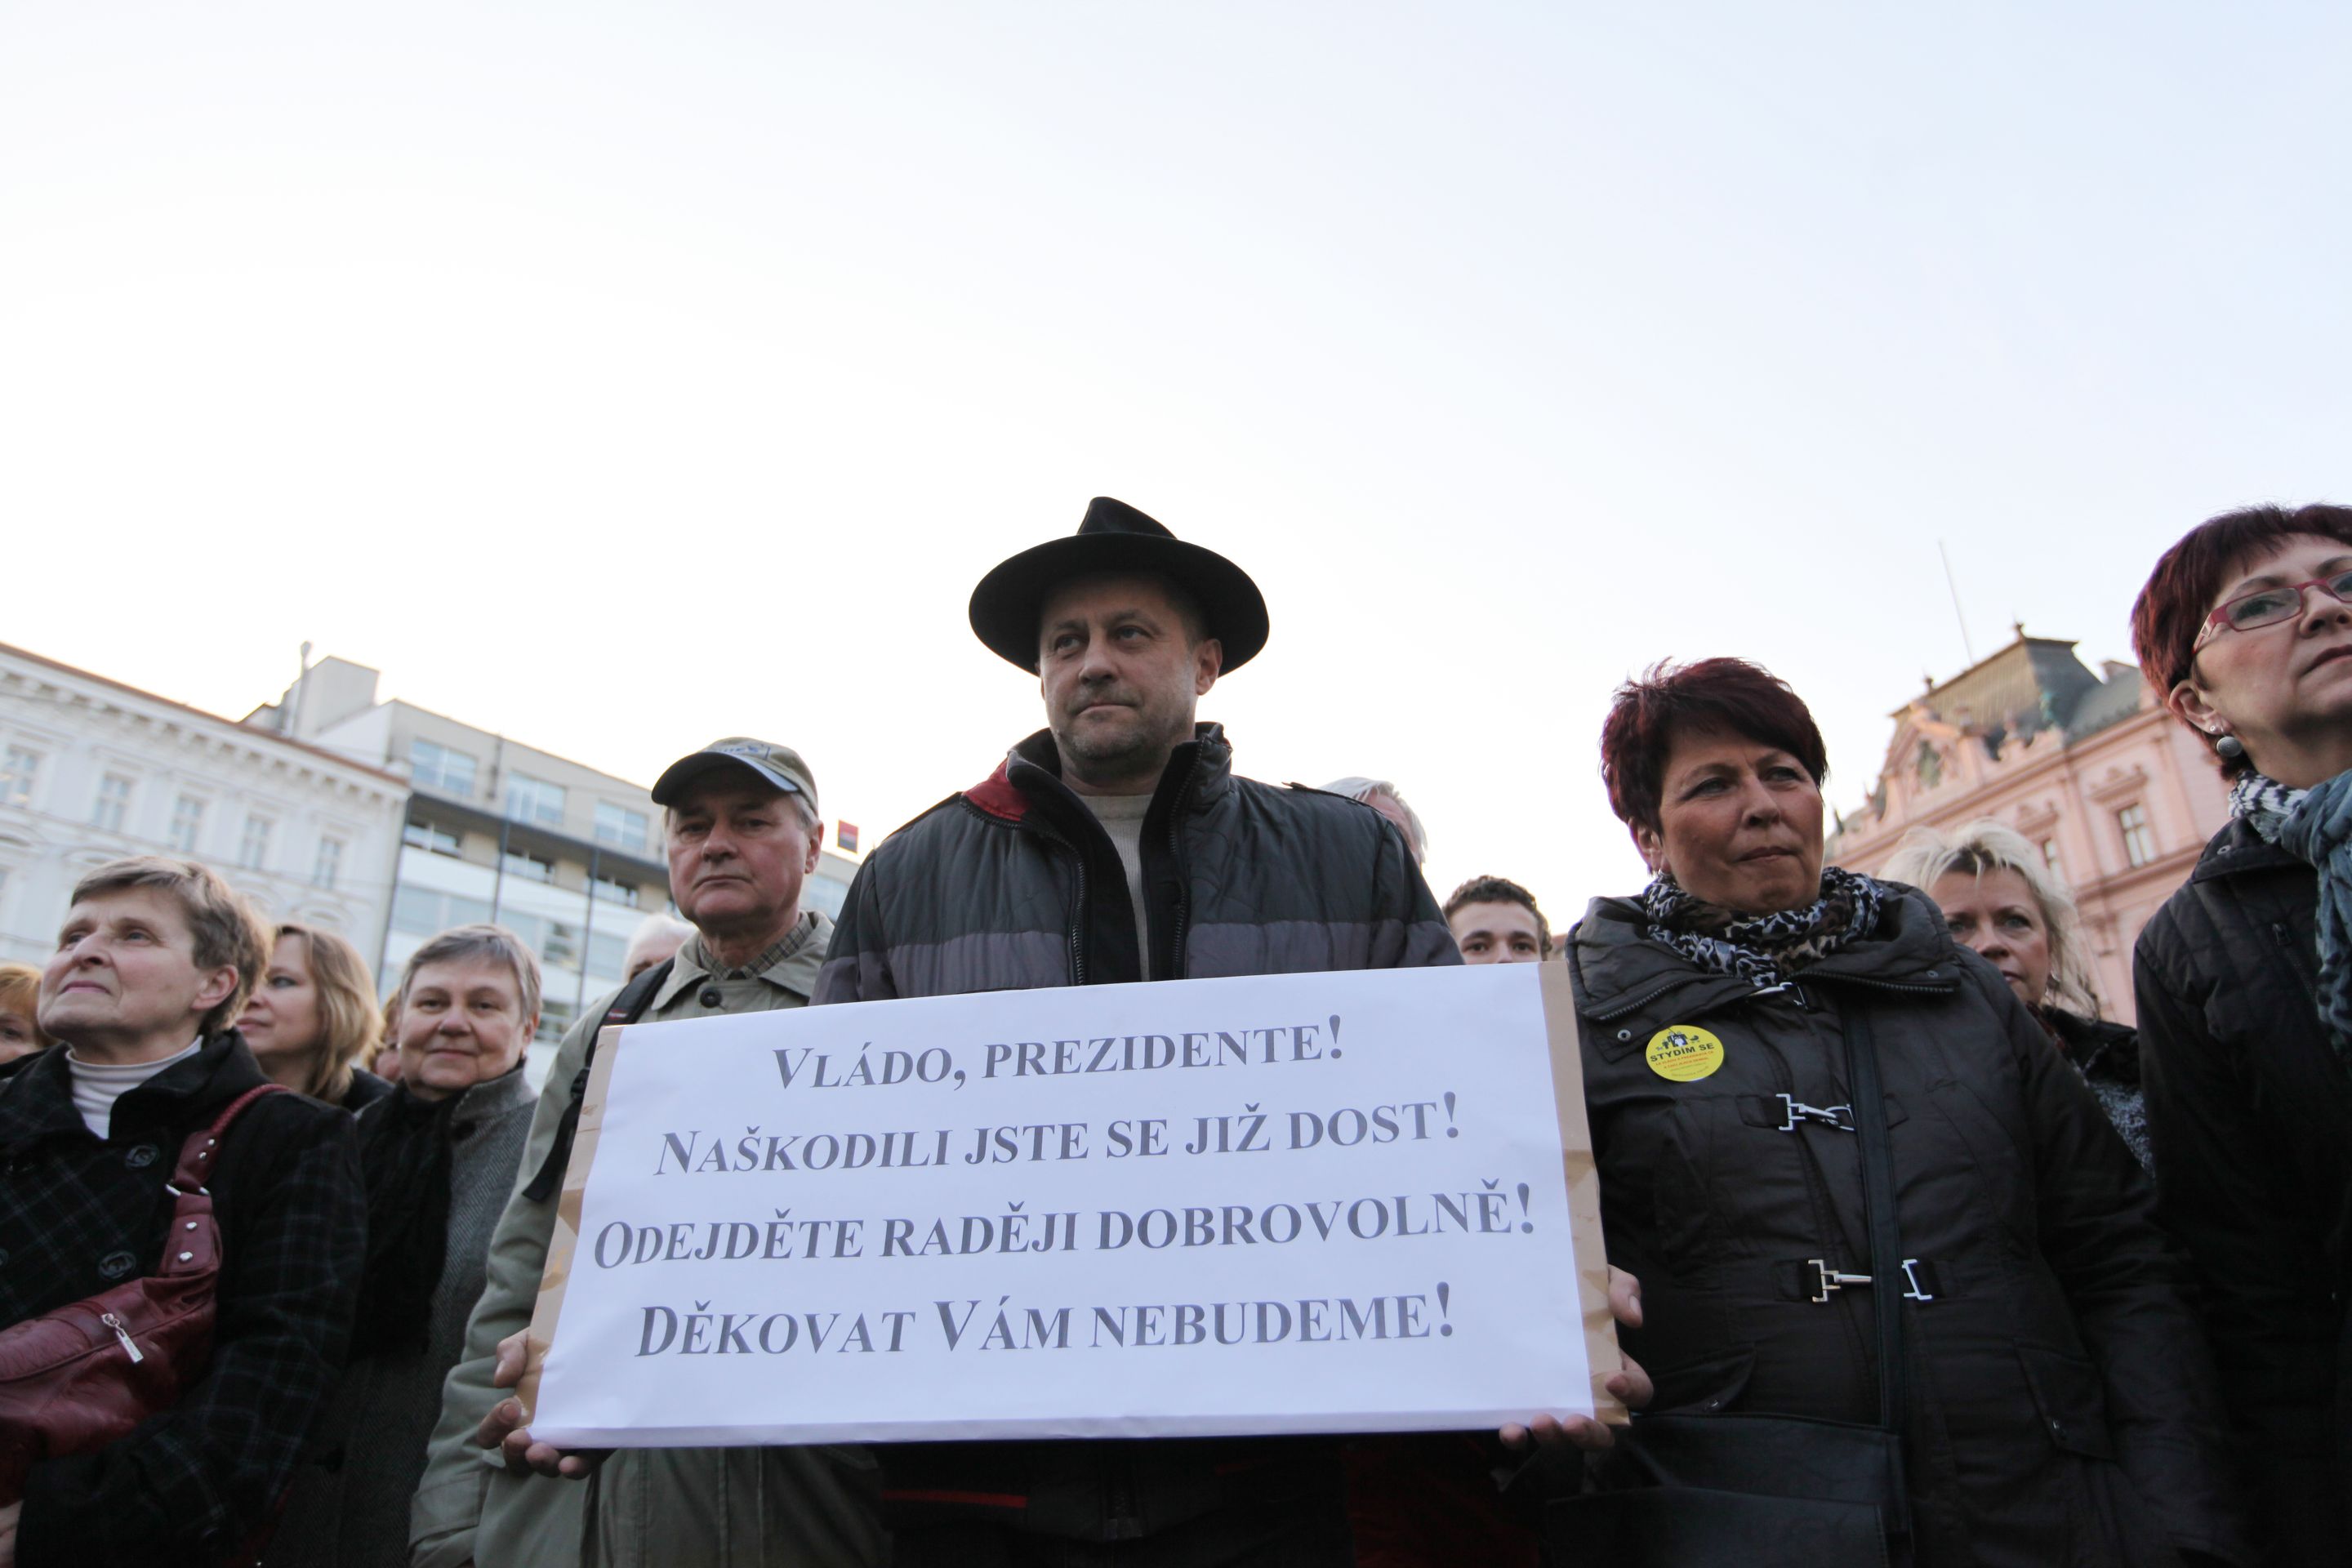 Lidé demonstrují proti vládě ČR a prezidentovi - 6 - Lidé protestují proti vládě Petra Nečase a prezidentu Klausovi (6/15)